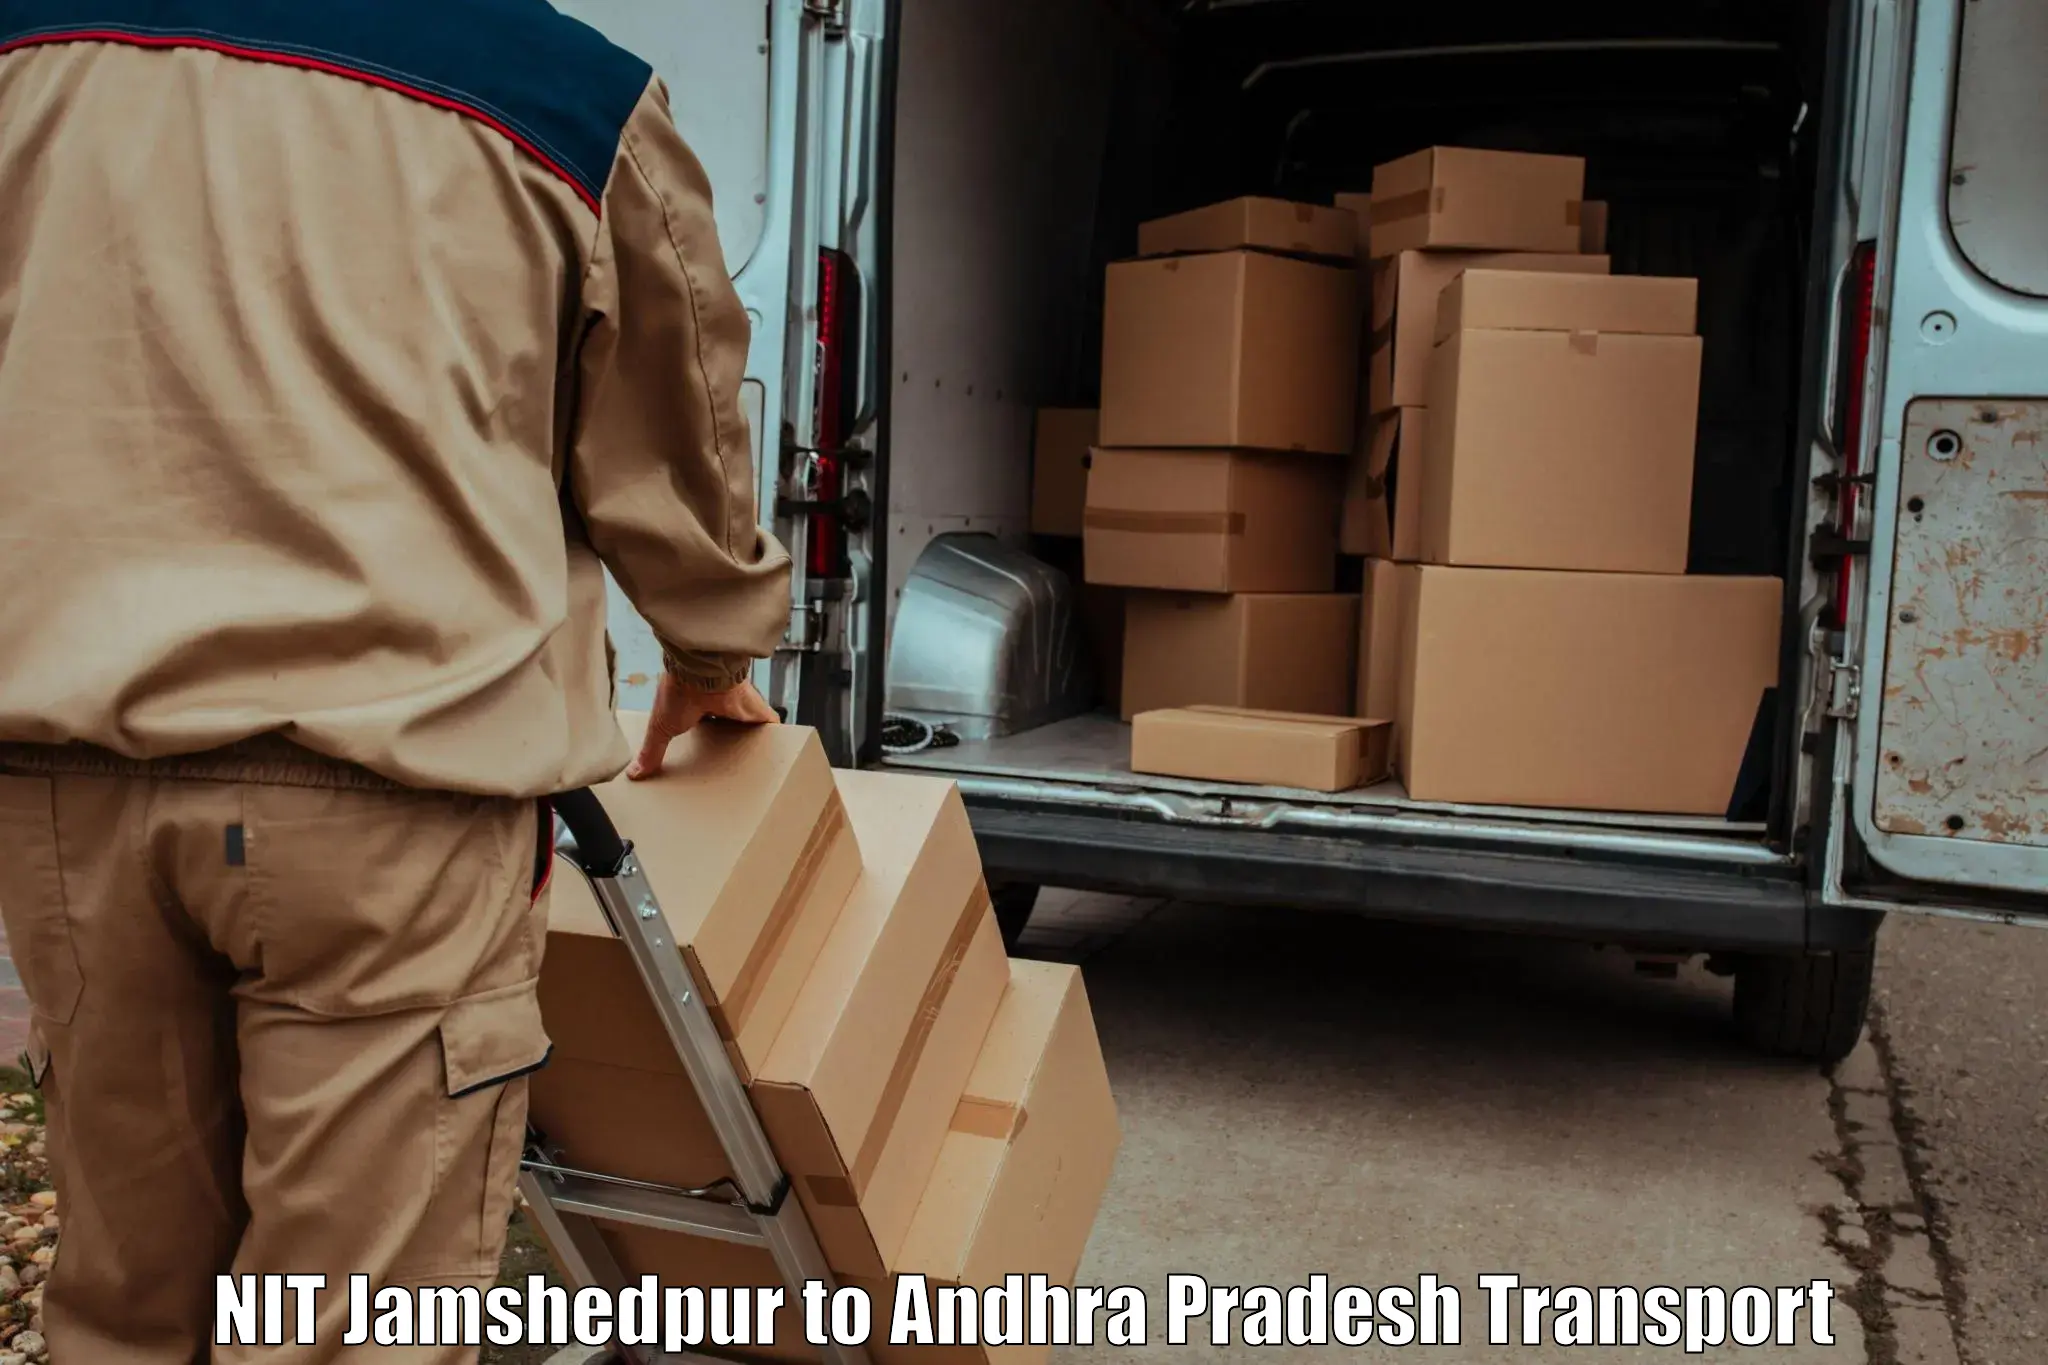 Shipping services NIT Jamshedpur to Konduru